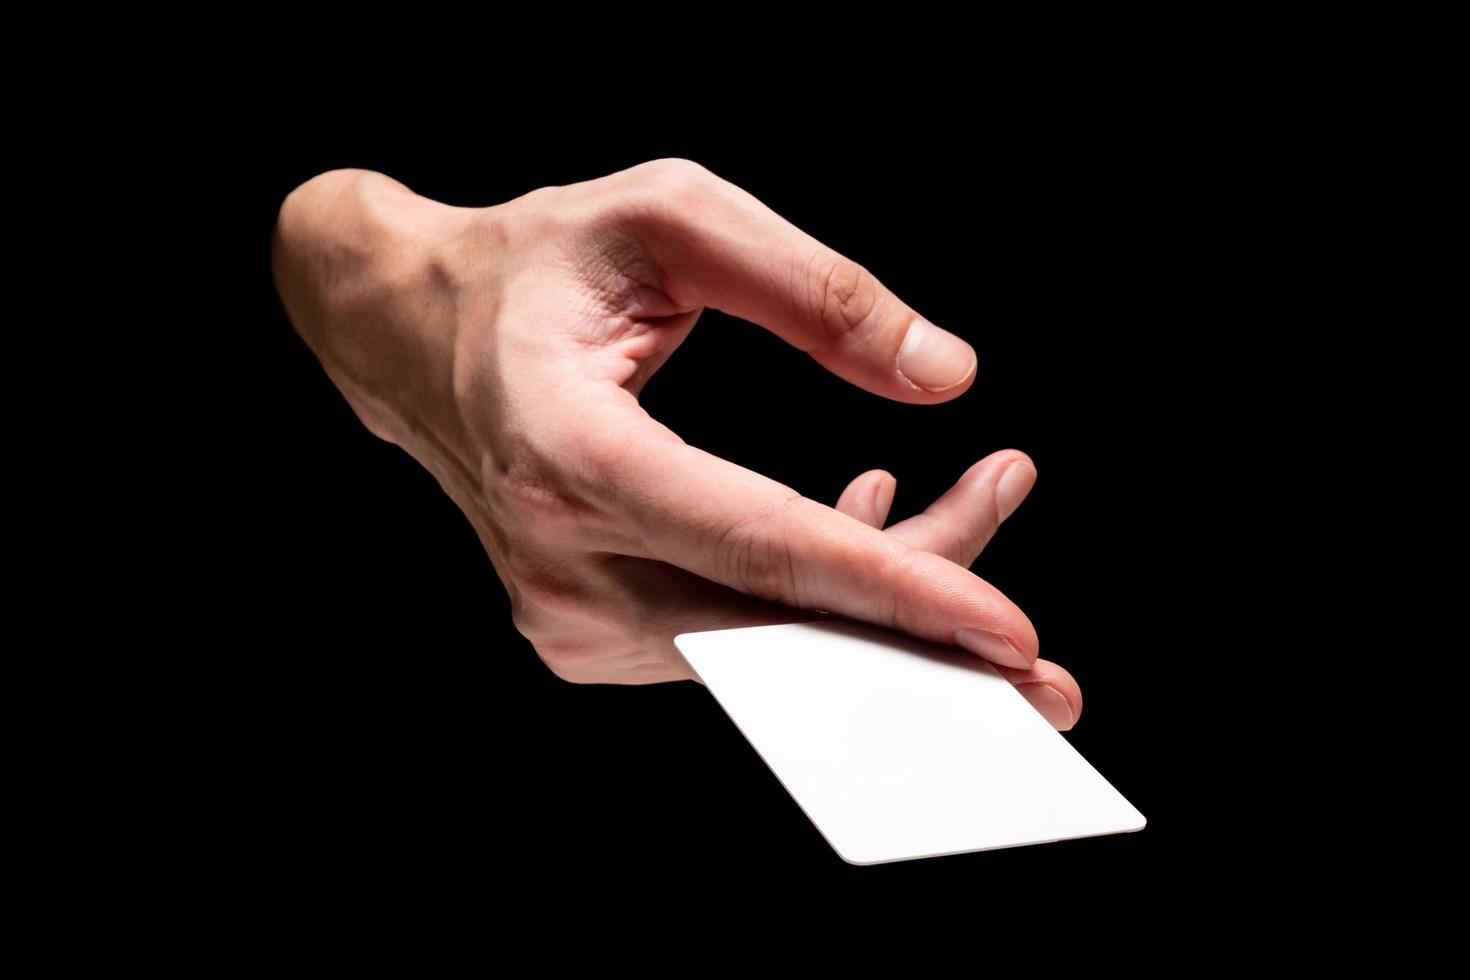 mano masculina sosteniendo la tarjeta sobre un fondo negro. foto